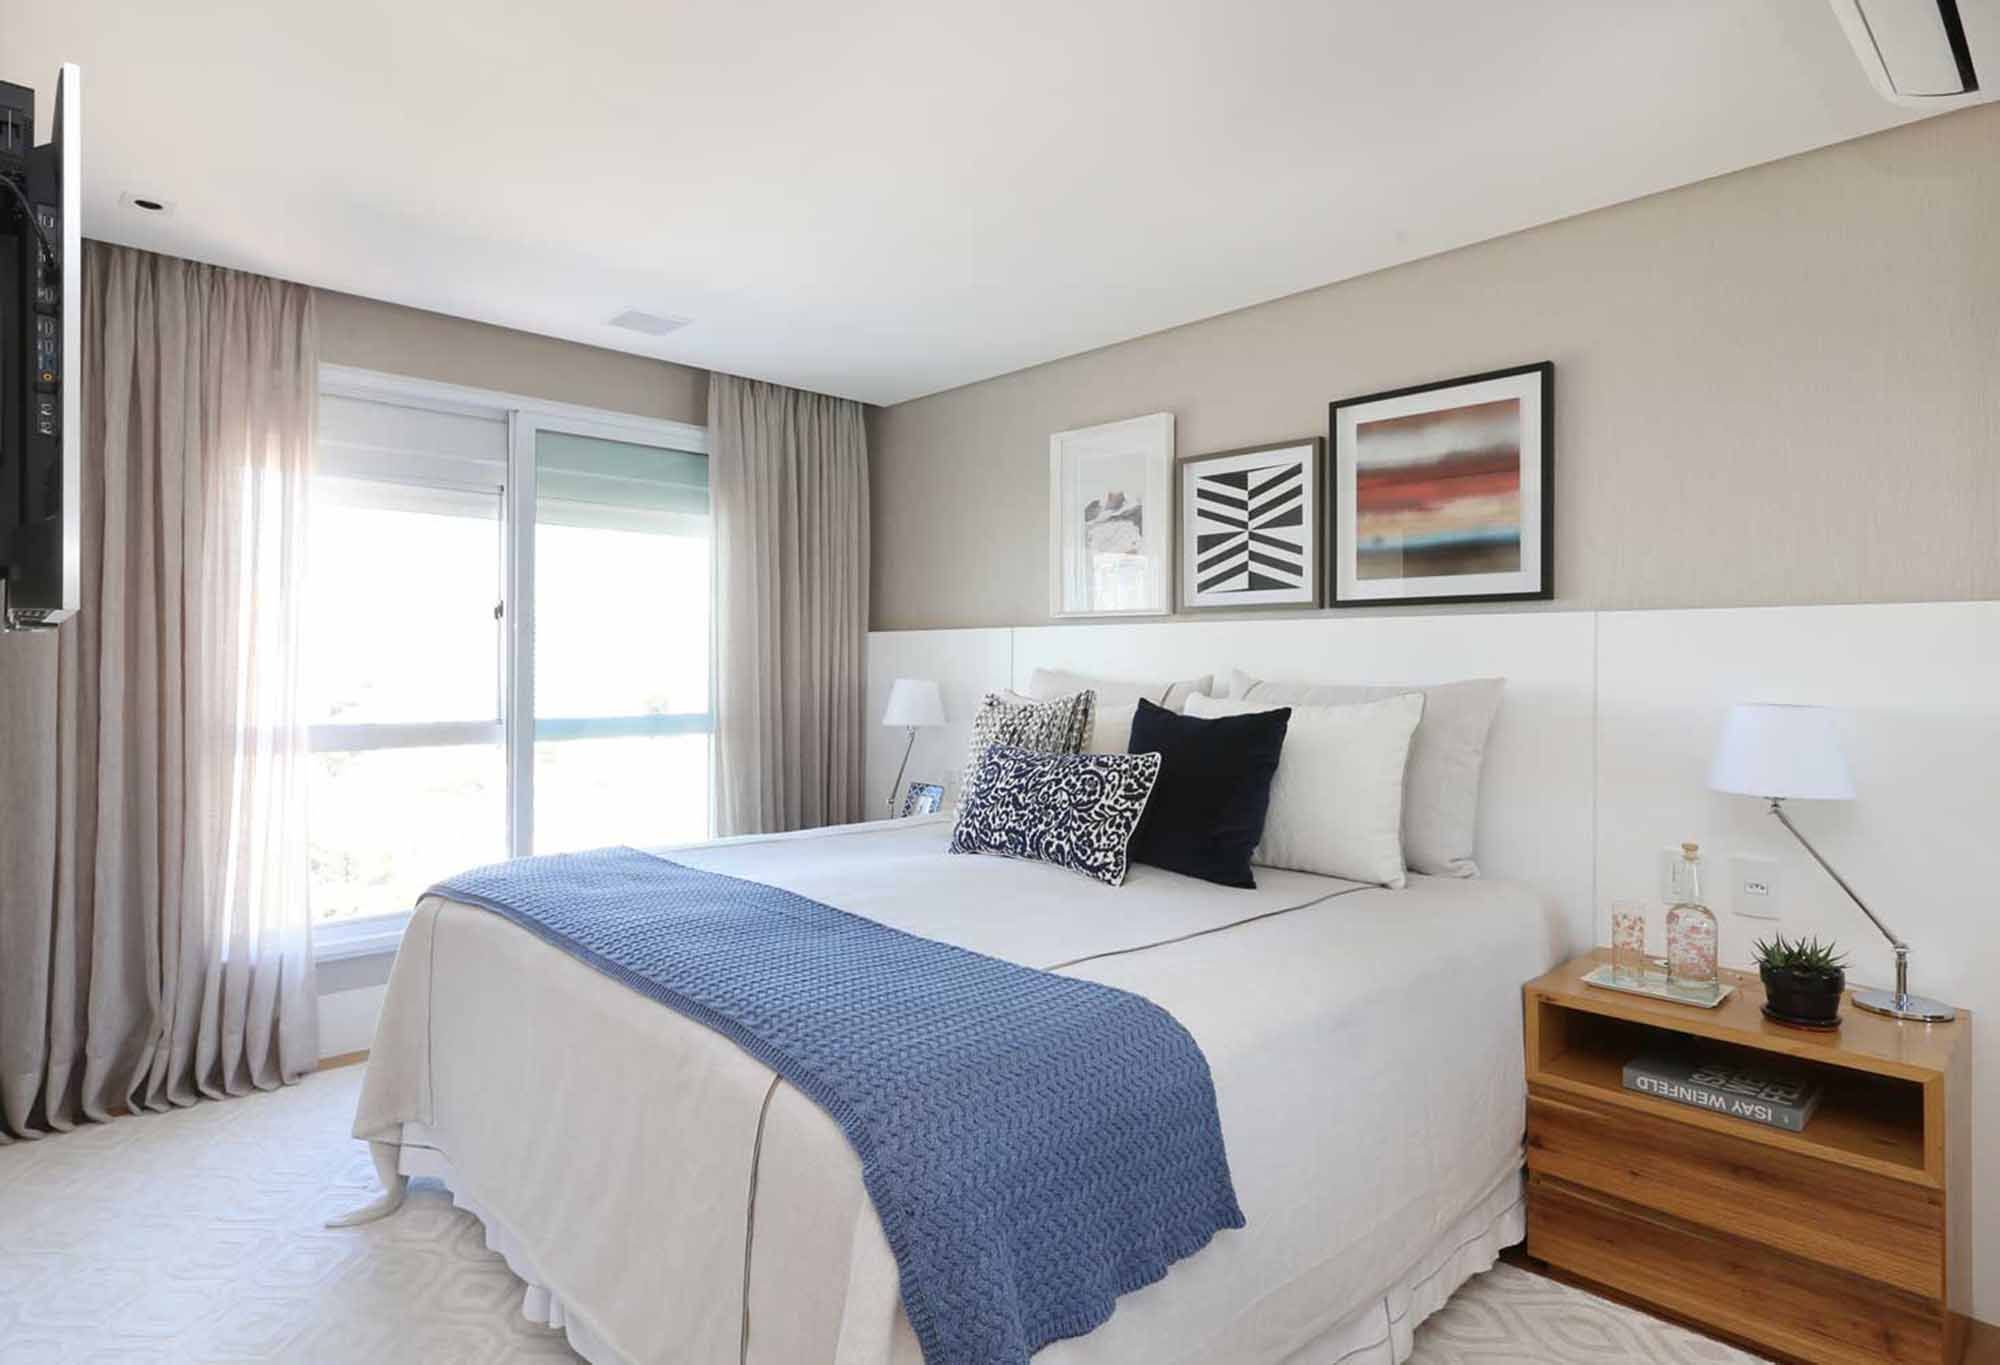 Azul une apartamento visualmente e é ponto de luz em decoração clean.